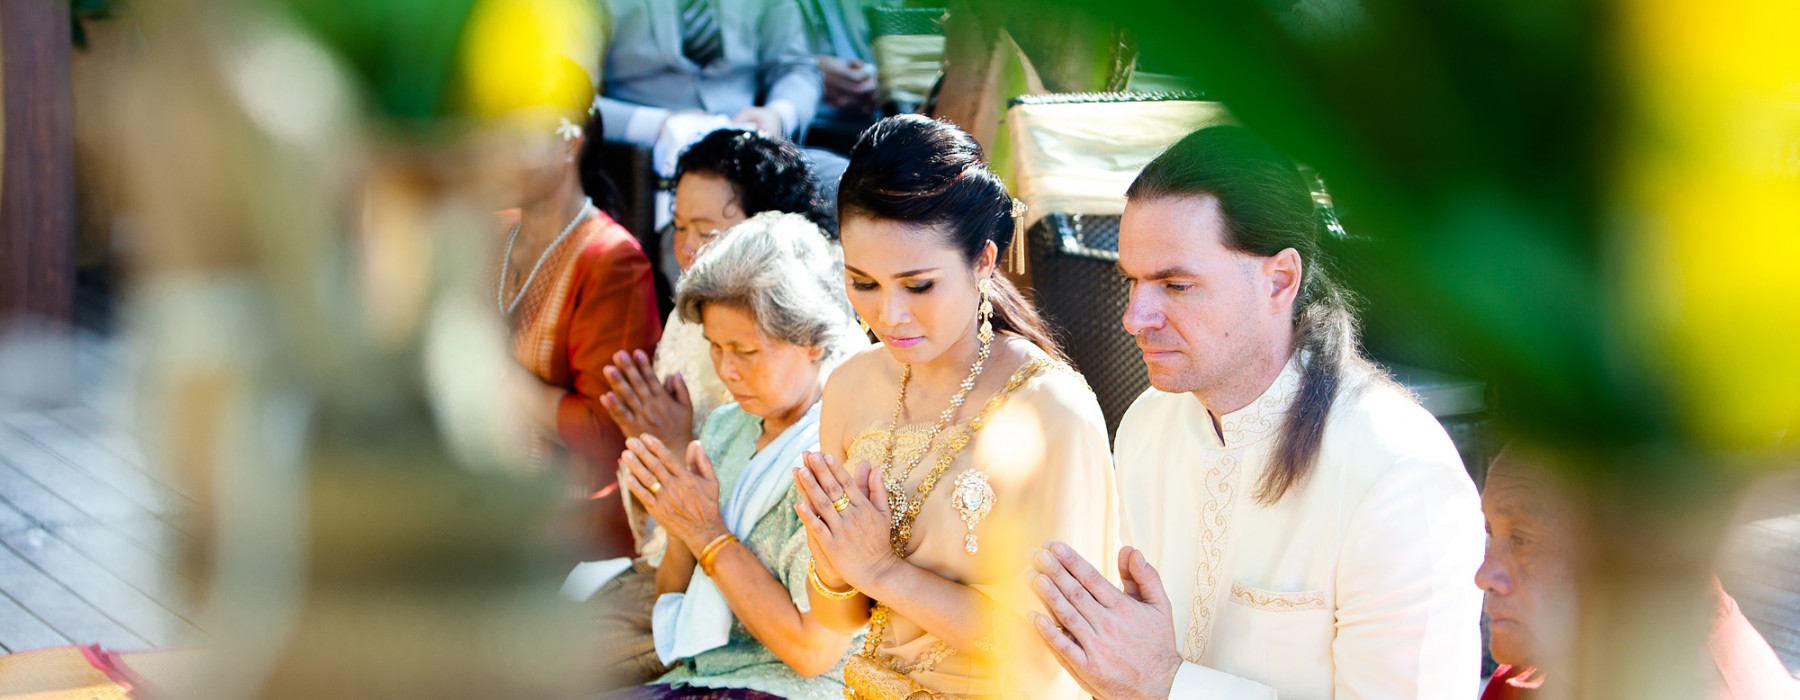 Hochzeit in Thailand – Eine buddhistische Hochzeits Zeremonie in Koh Chang